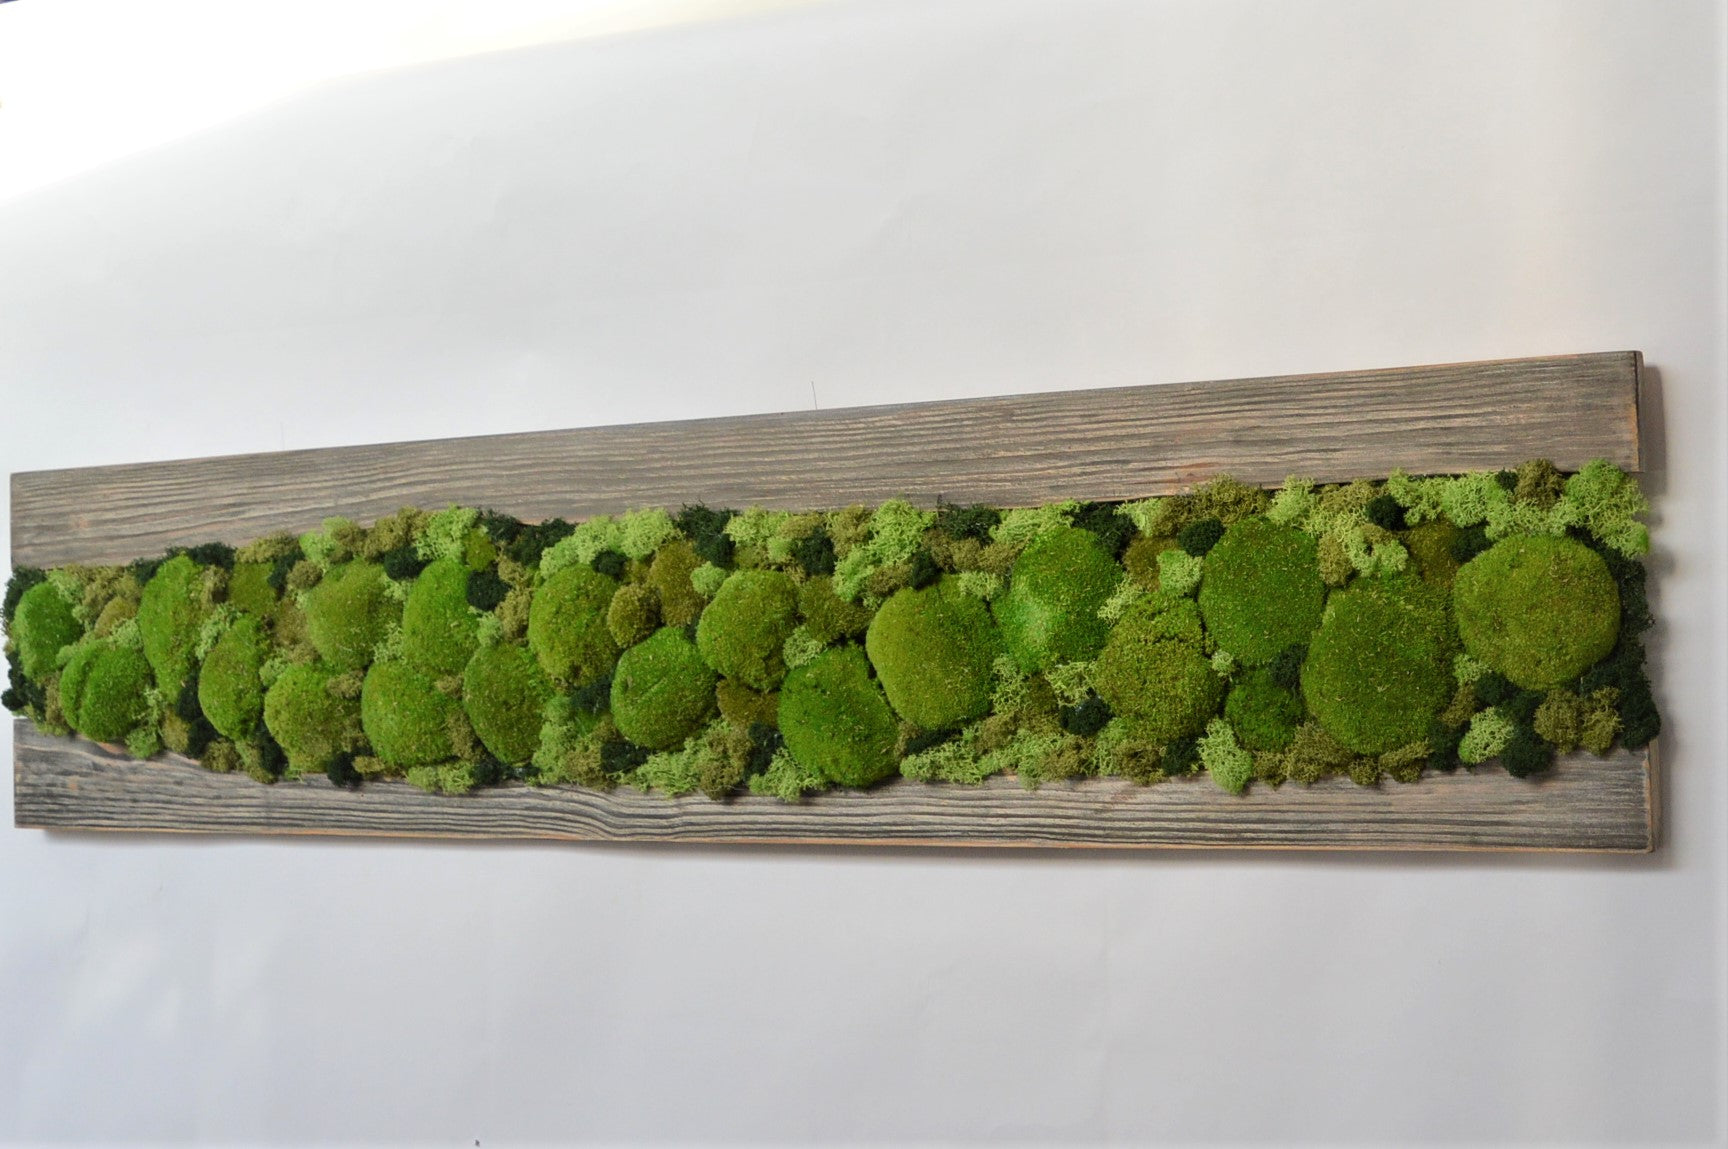 Tavola legno di abete con polemoss  e licheni disidratati, stabilizzati